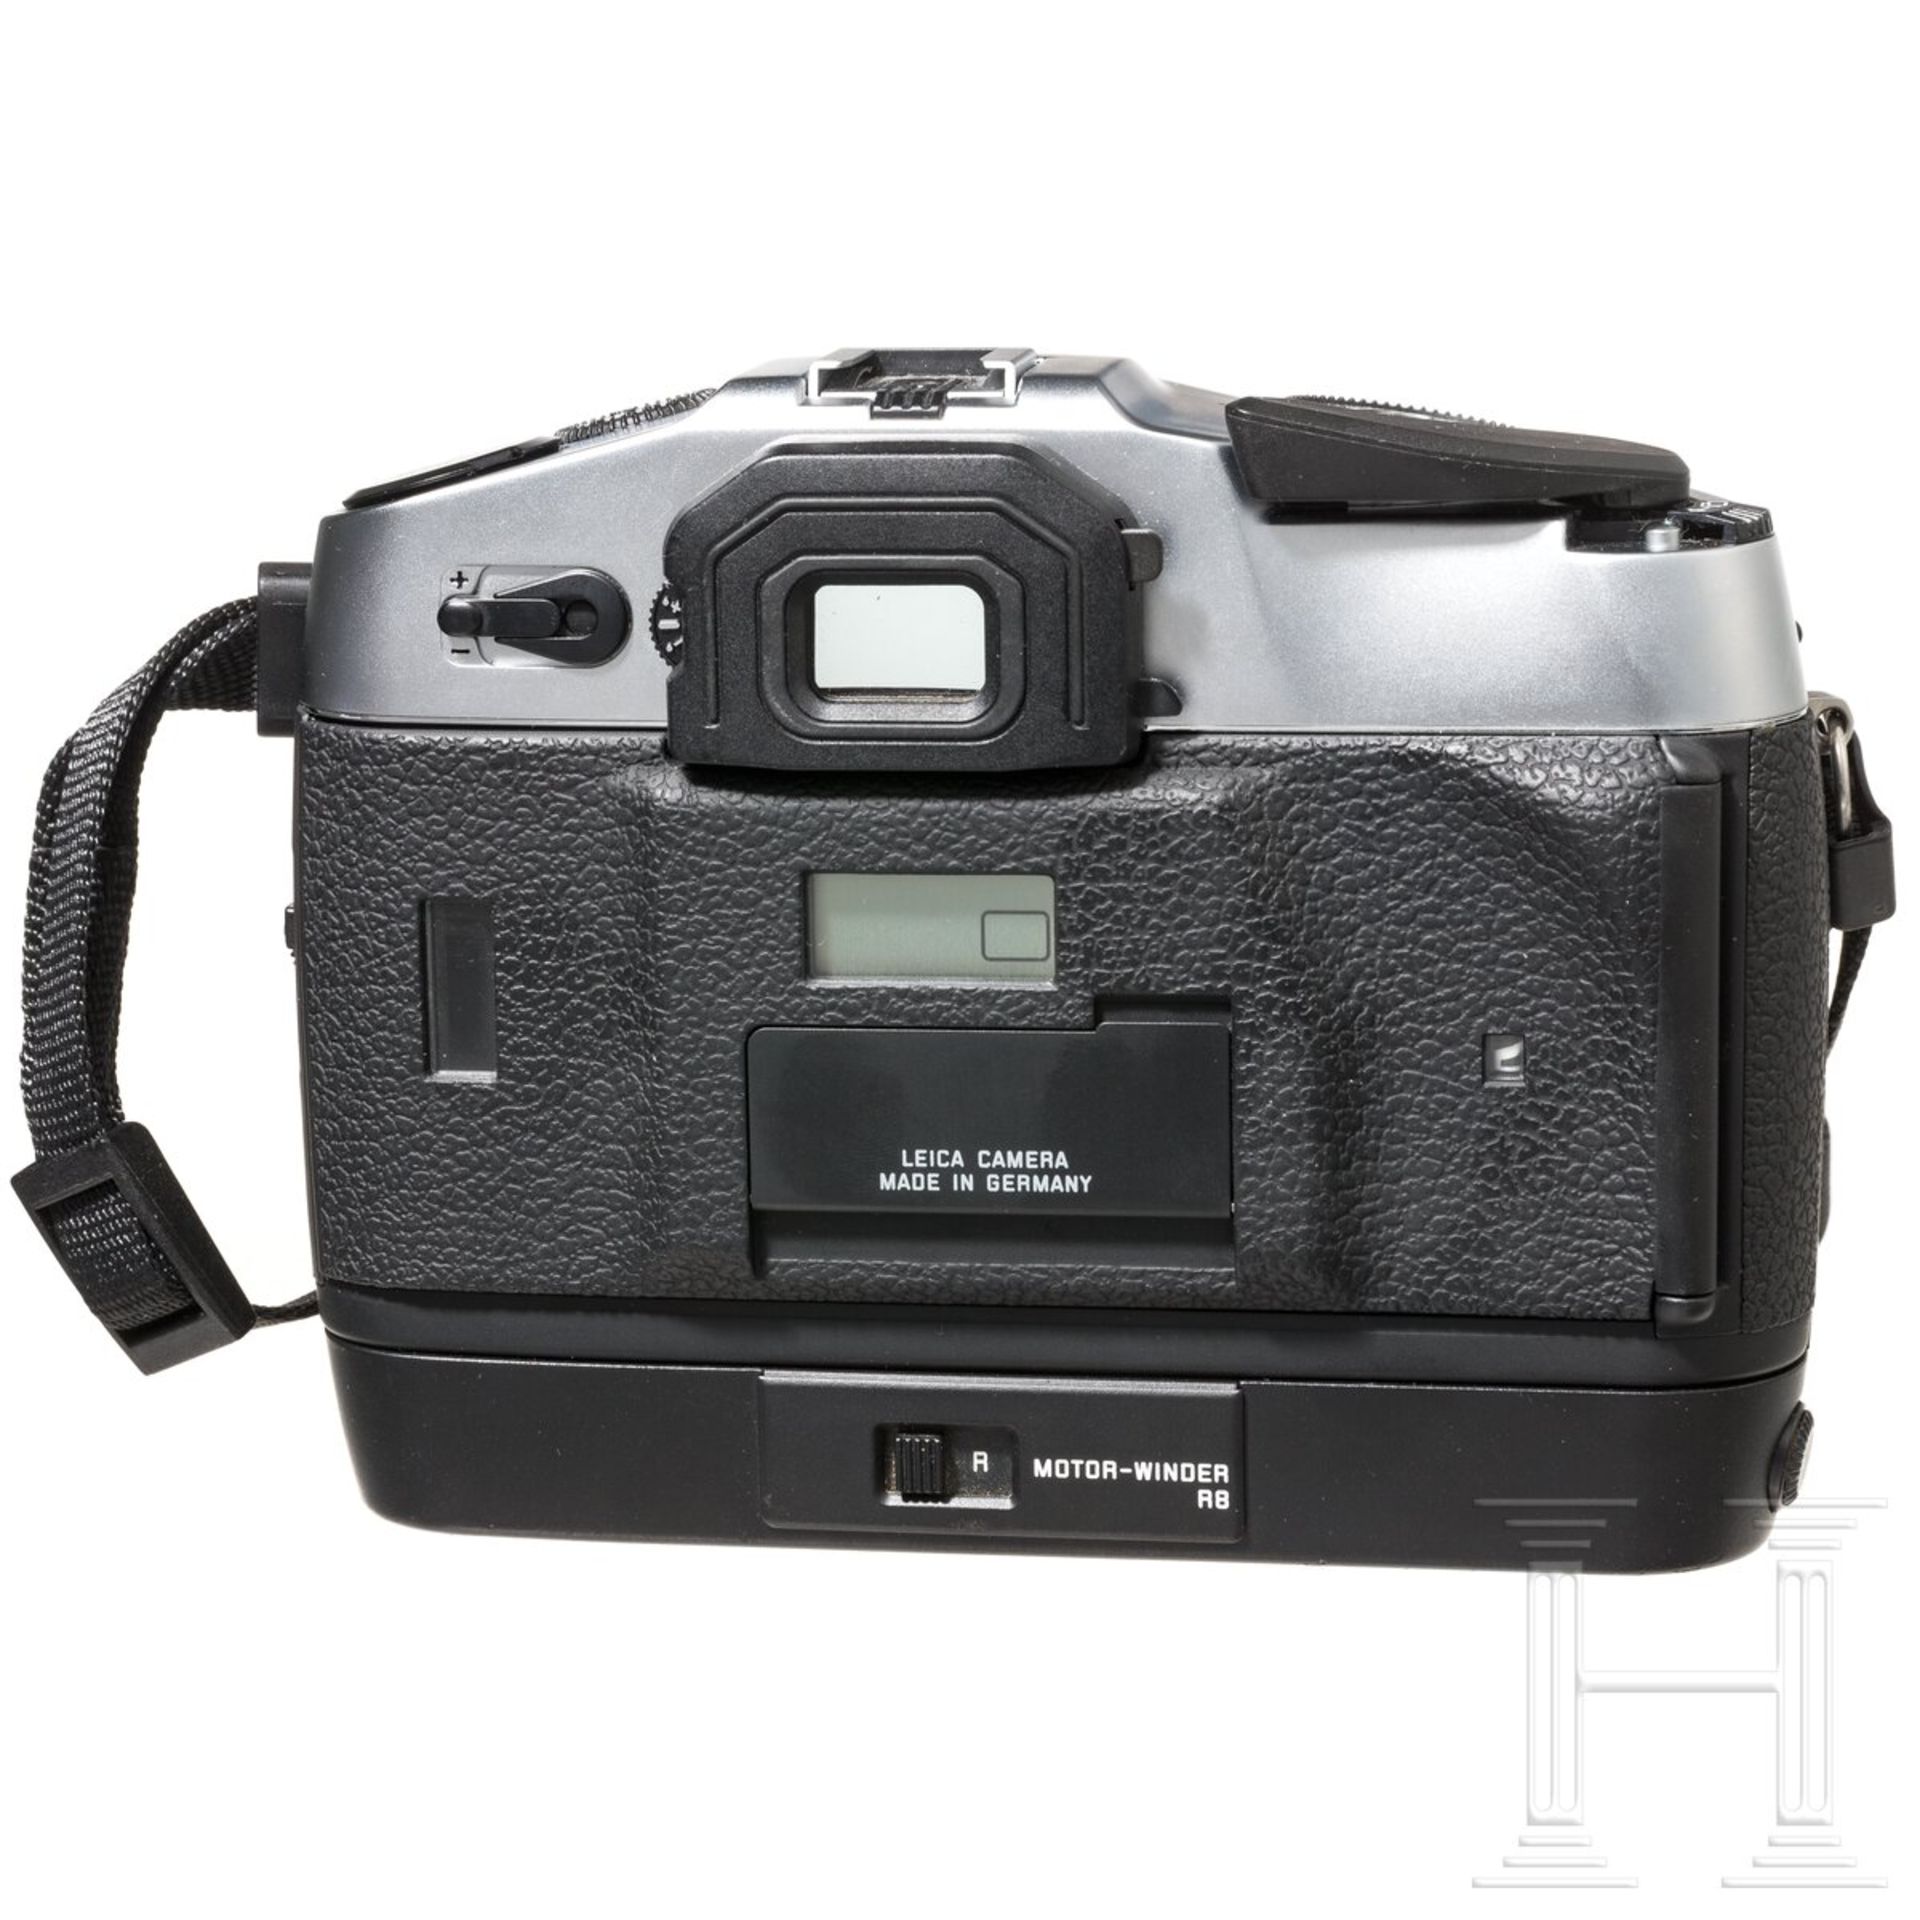 Kameragehäuse Leica R8, mit Motor-Winder, Tragekoffer - Image 4 of 6